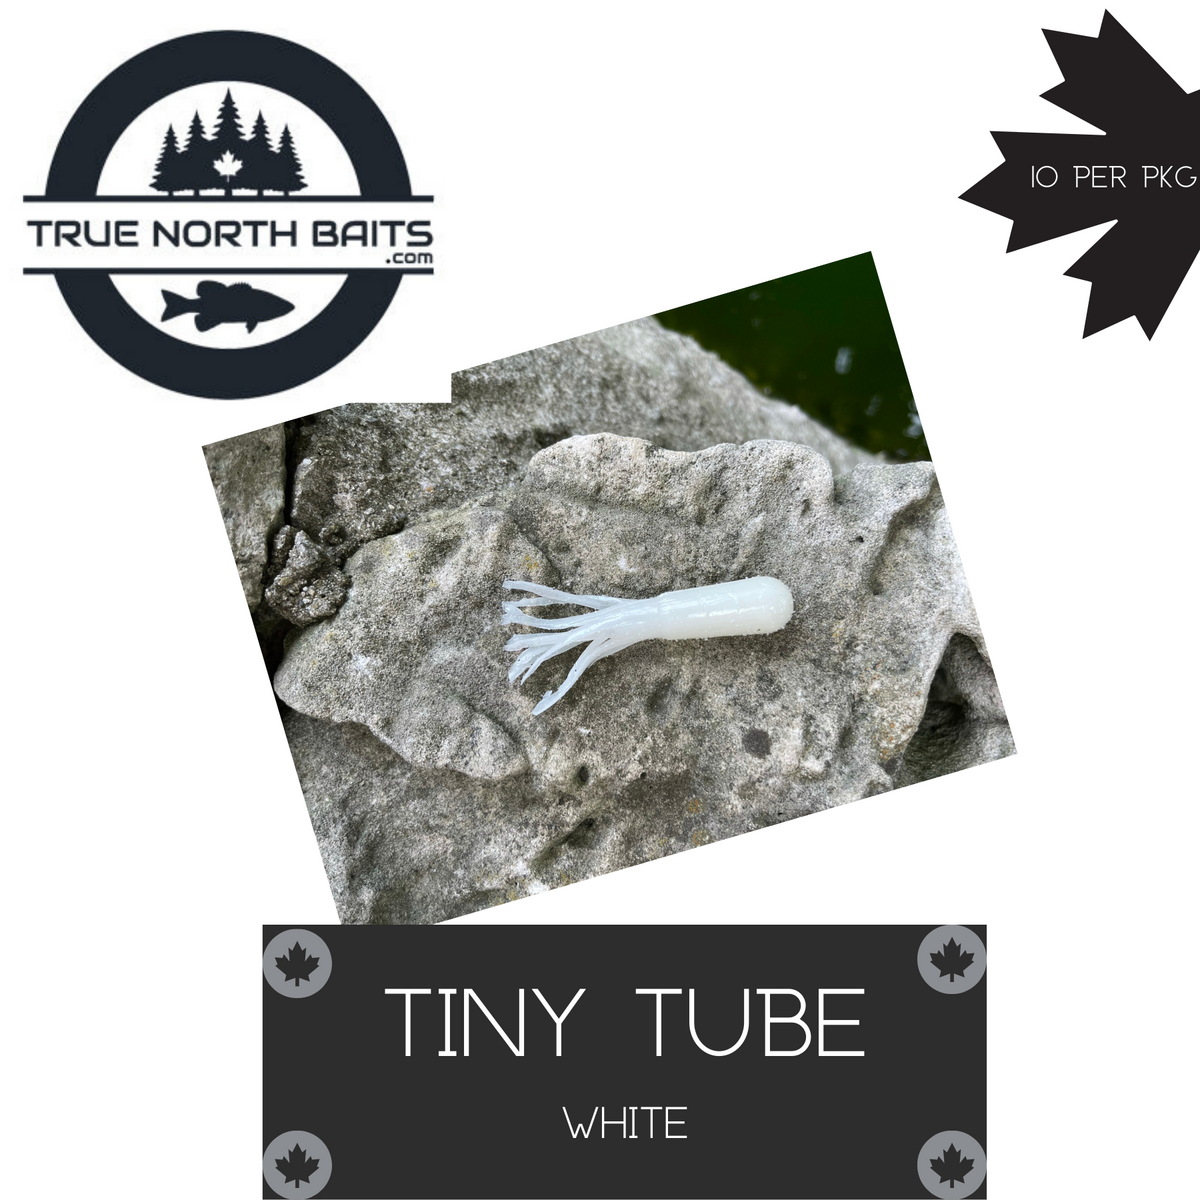 TRUE NORTH BAITS TINY TUBE